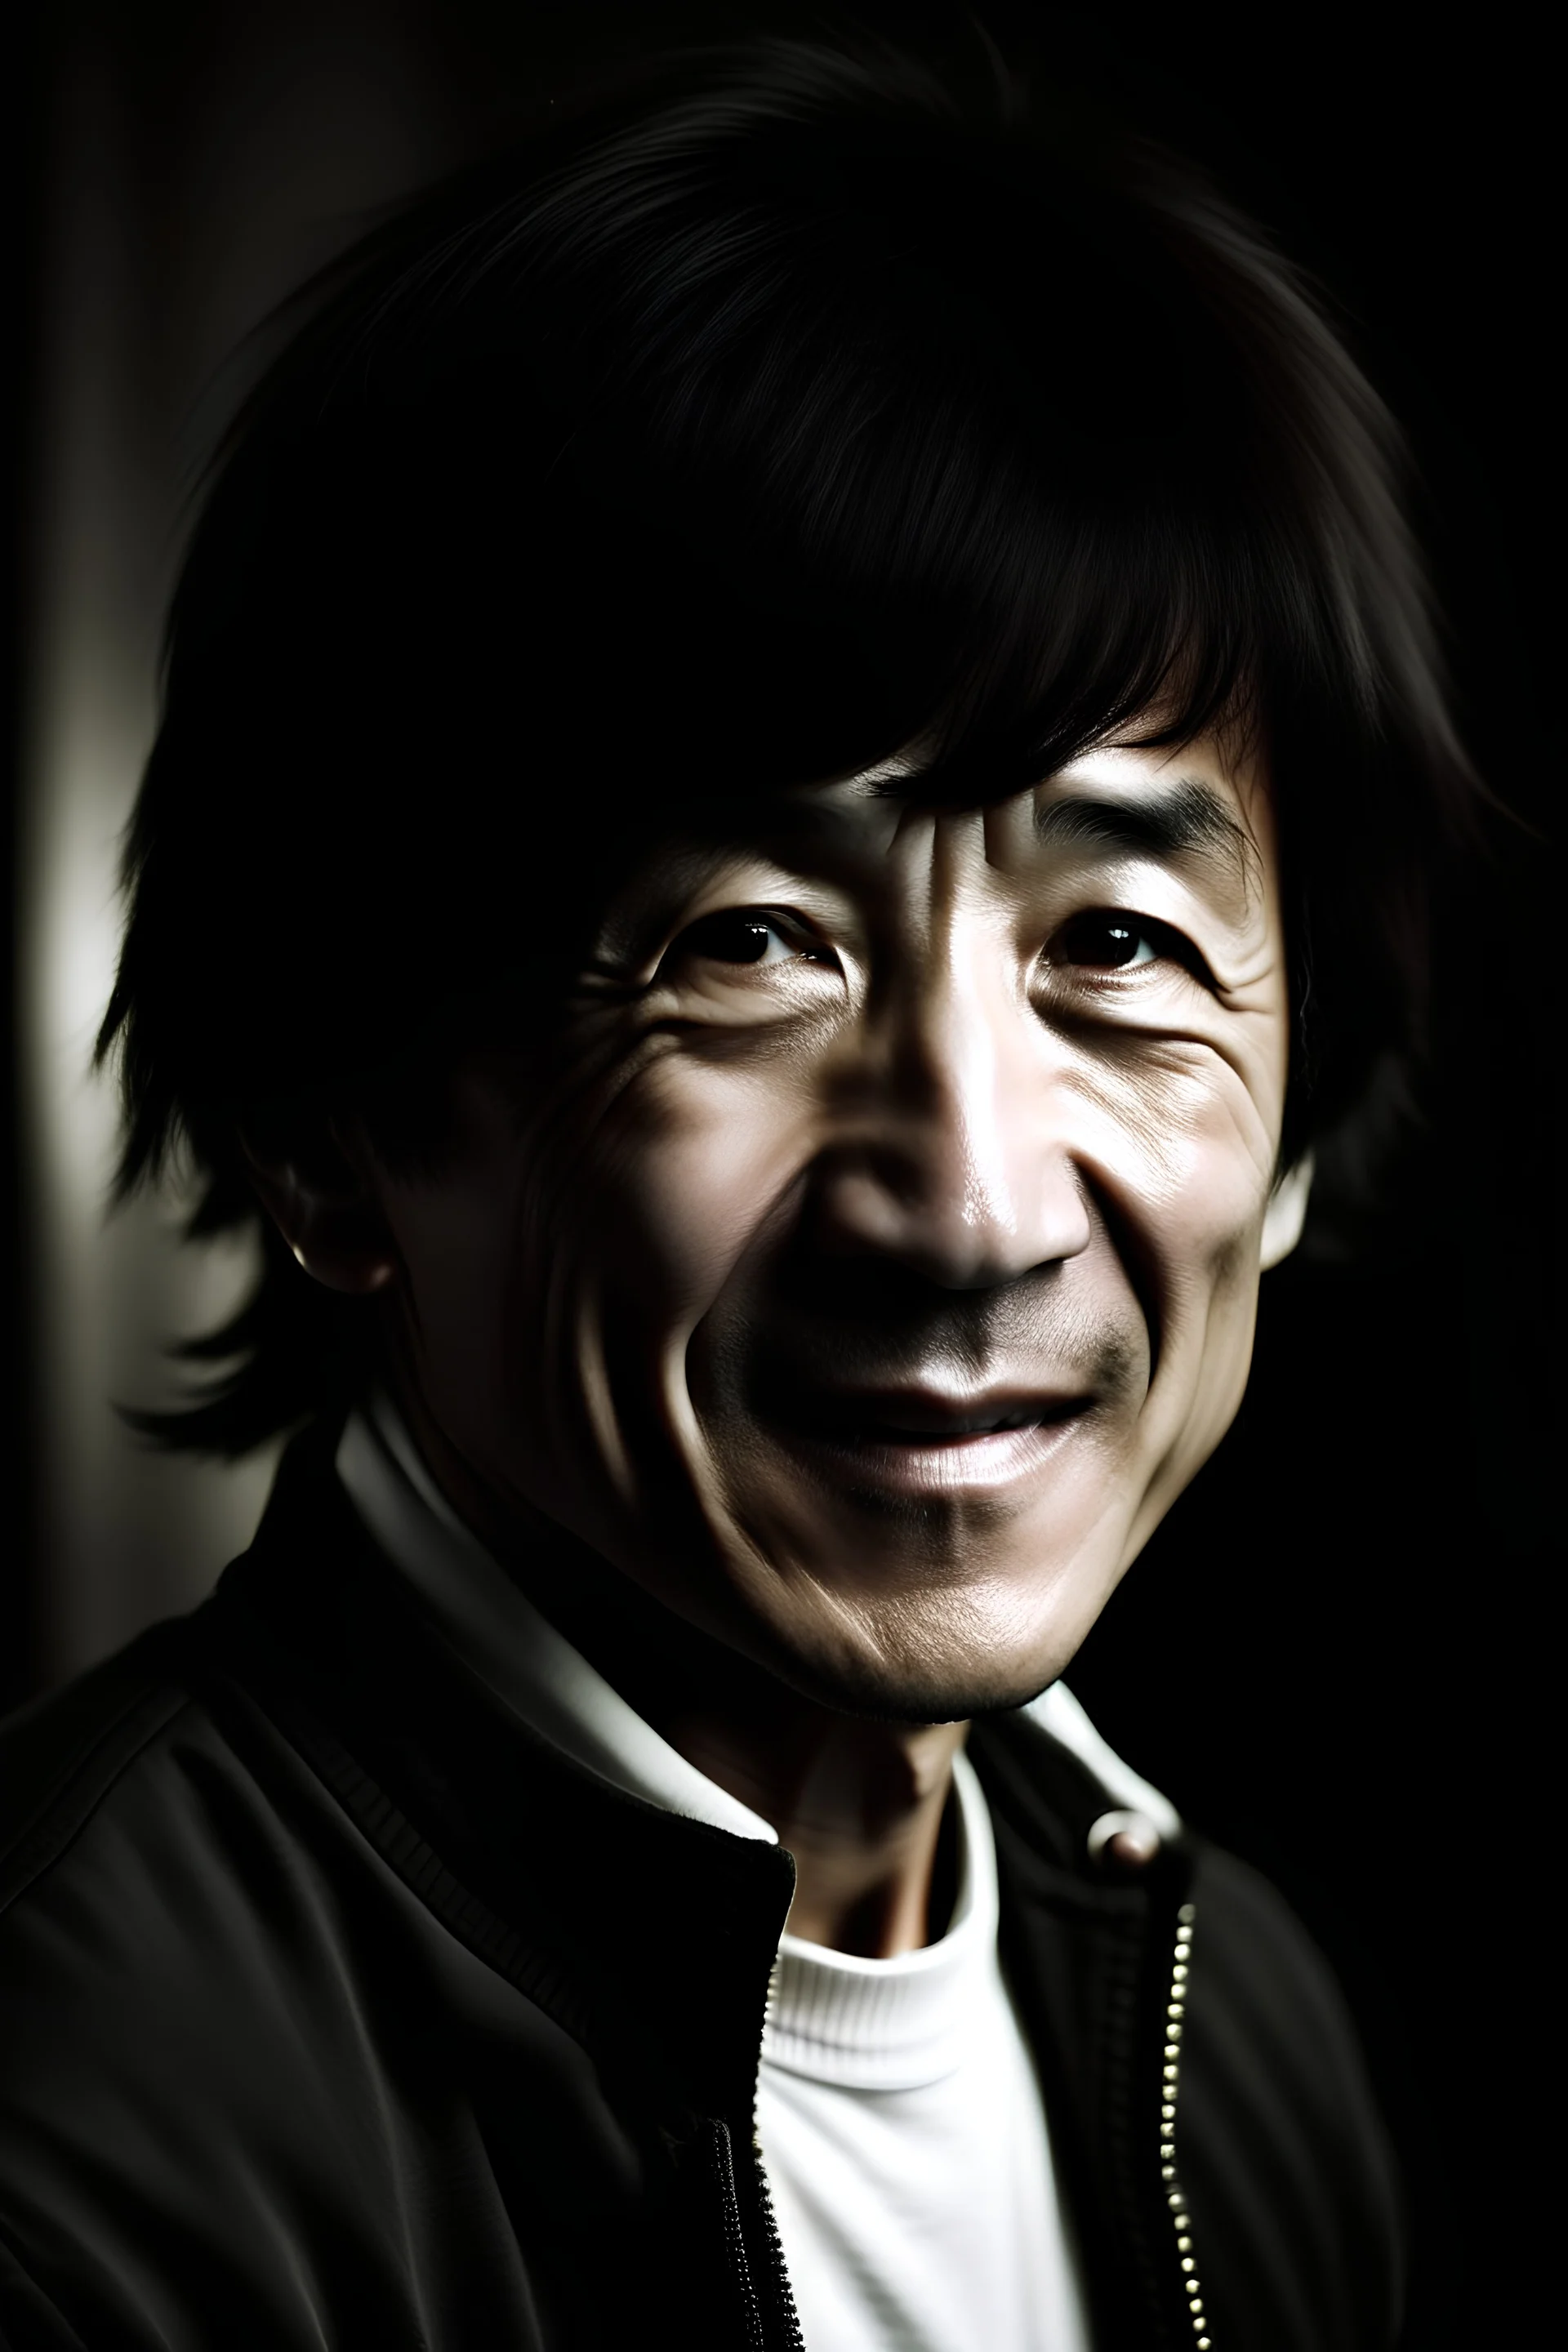 Jackie Chan at age 30, HD 4K, scientific detail